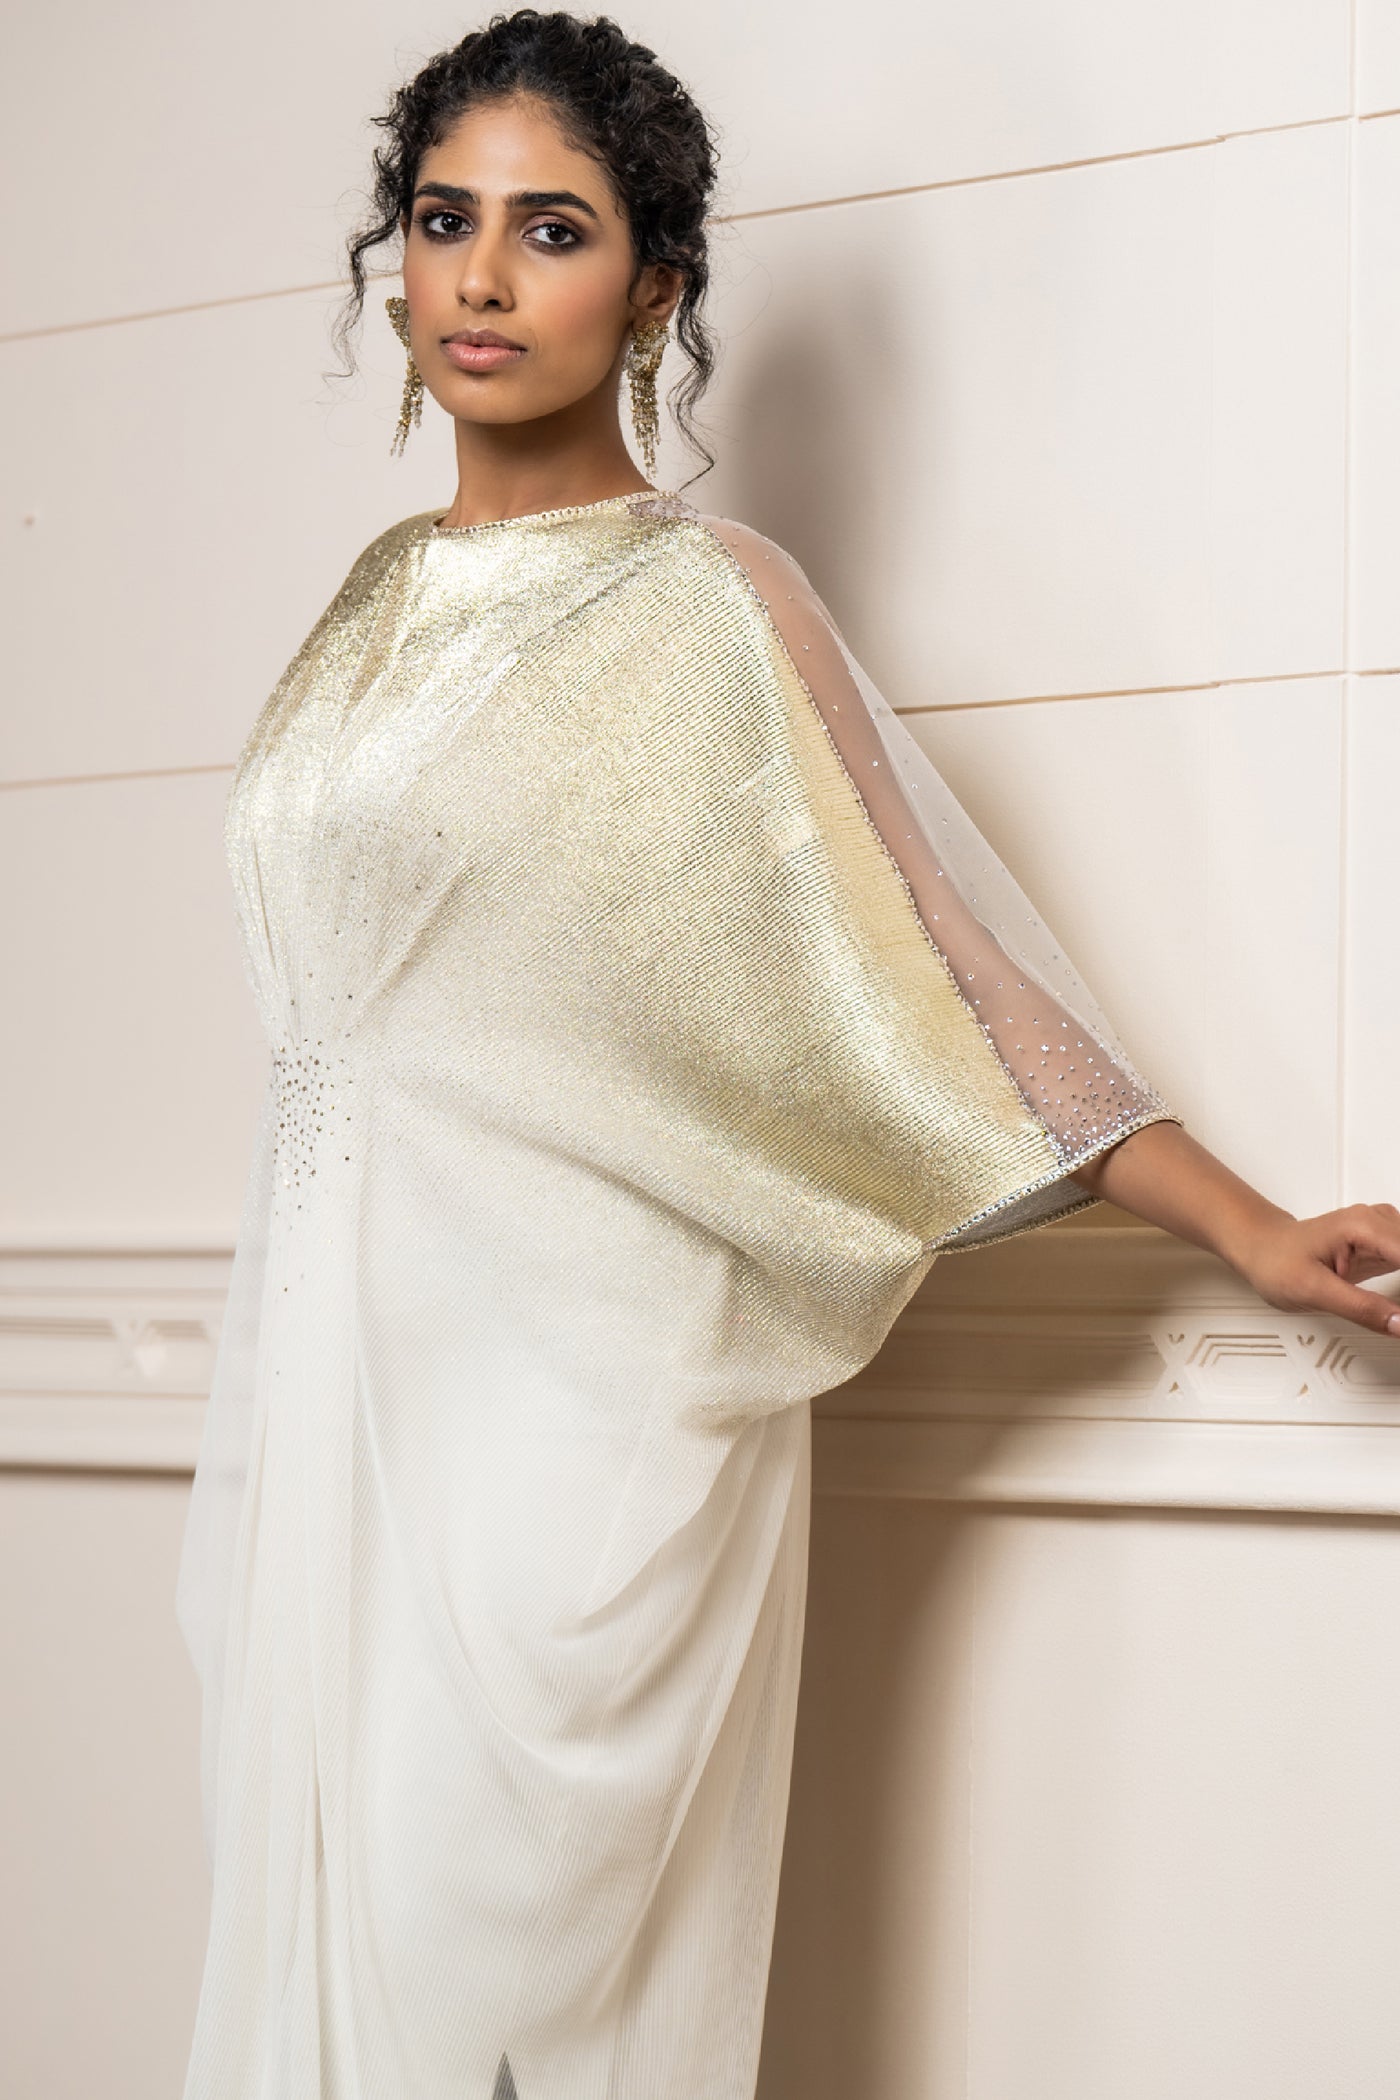 Tarun Tahiliani Dress Slip indian designer wear online shopping melange singapore